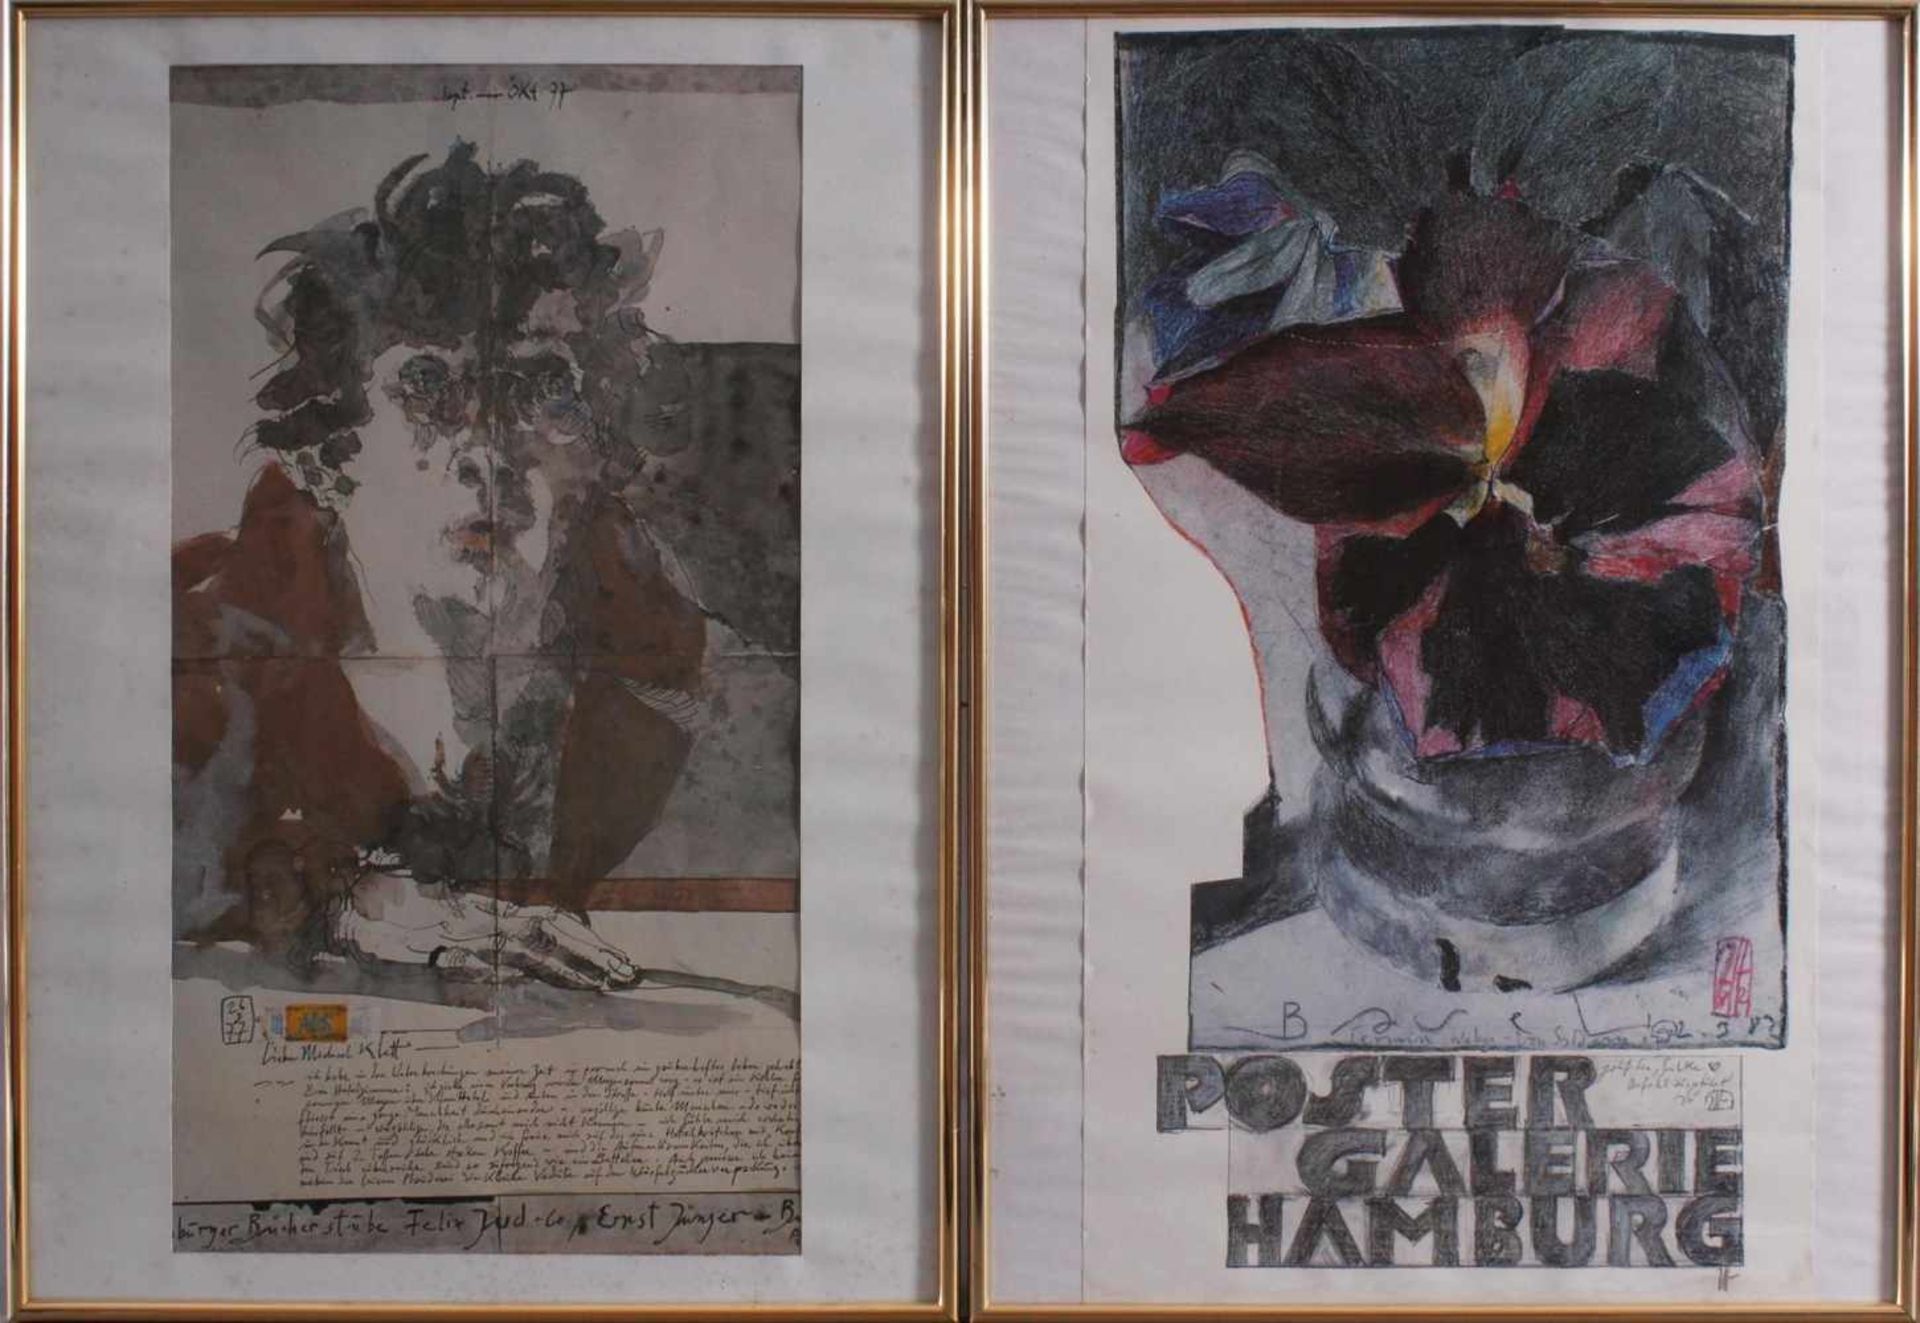 Horst Janssen (1929 - 1995)2 Farbdrucke, "Poster Galerie Hamburg" ca. 69 x 39 cm. "Hamburger